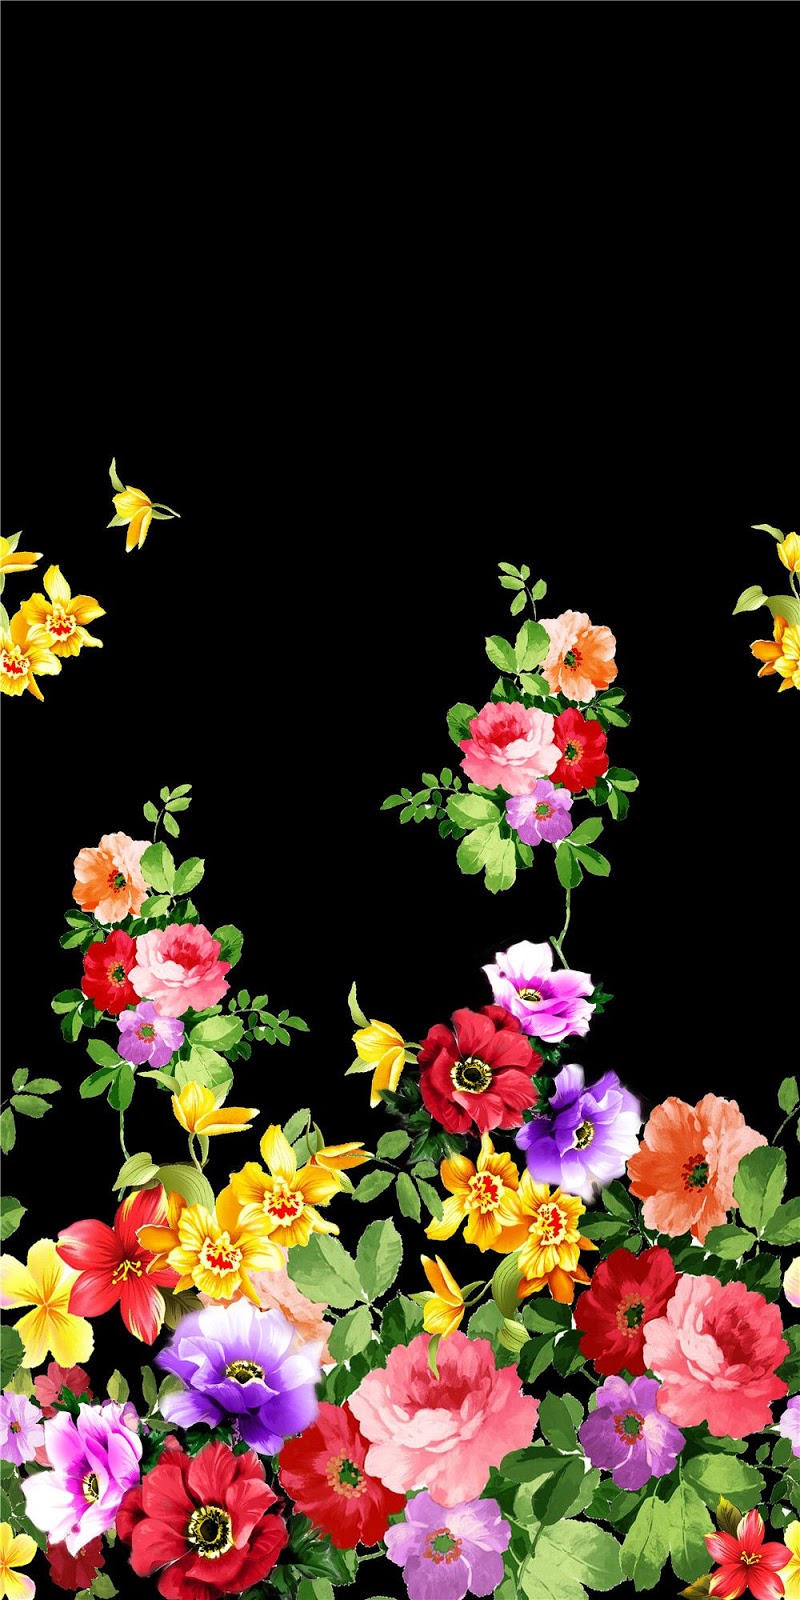 디지털 프린트 벽지,꽃,식물,꽃 무늬 디자인,꽃잎,장미